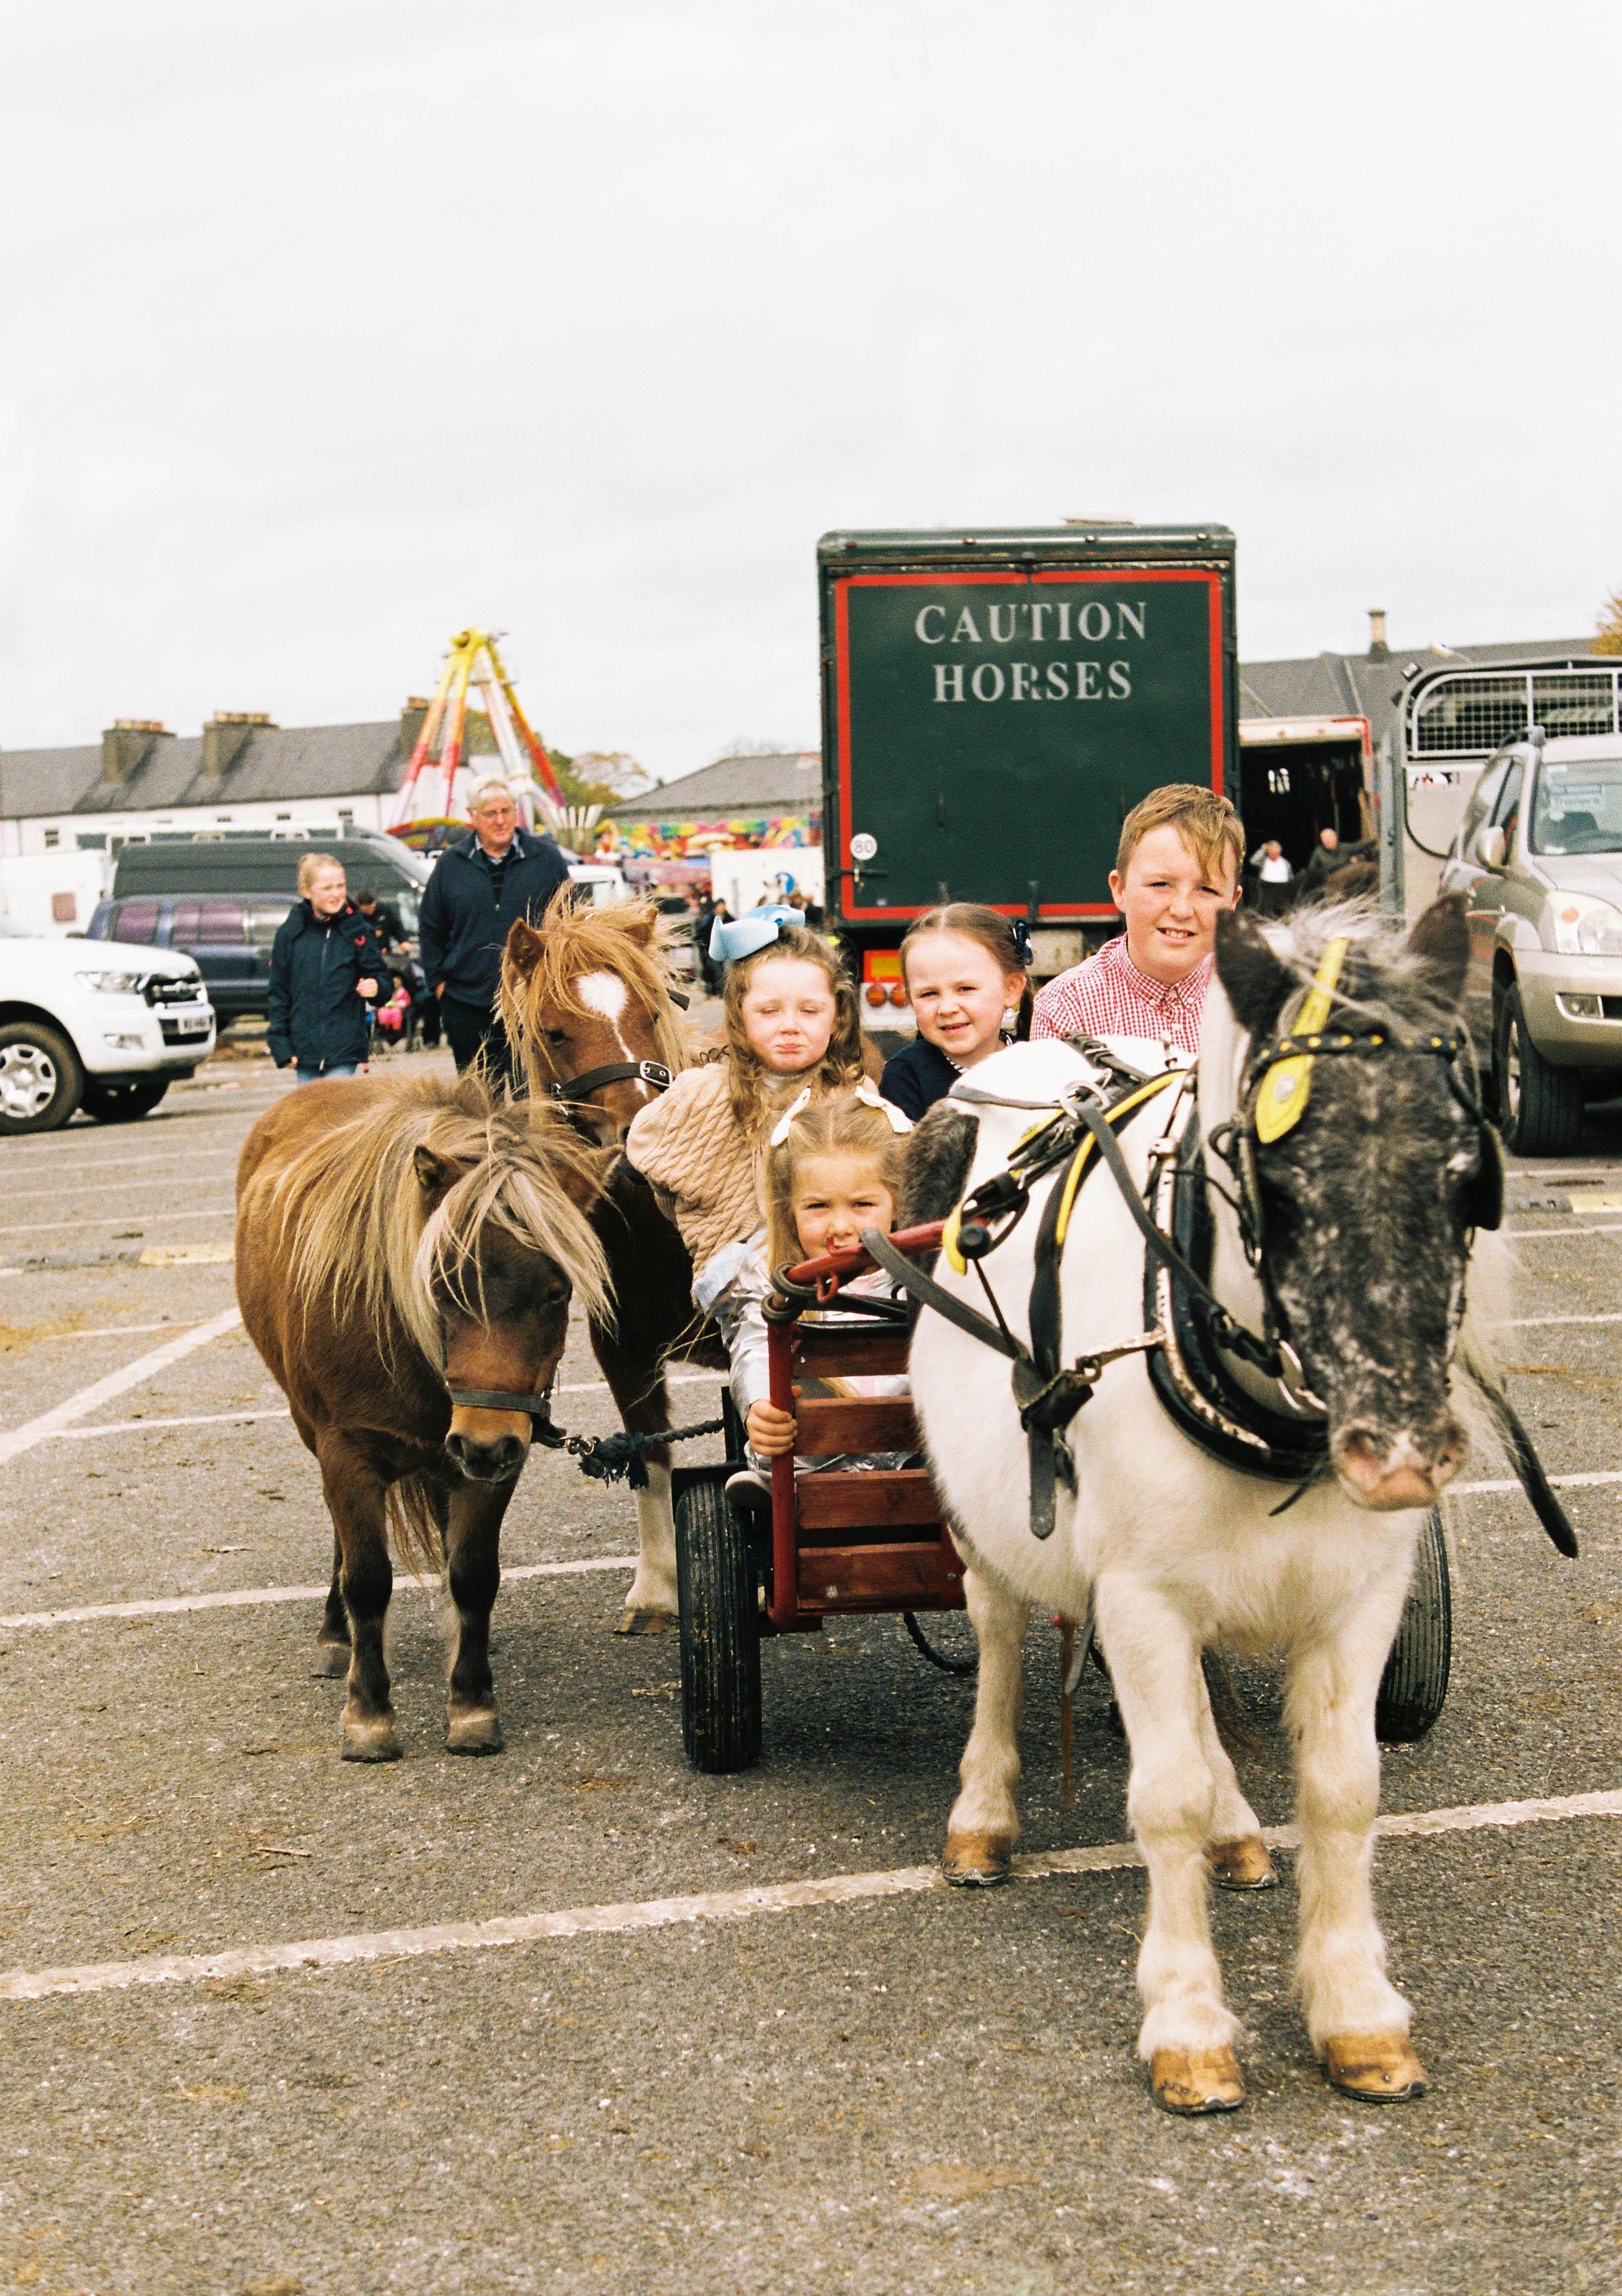 Boy on Horse - Ballinasloe Horse Fair, Ireland, 2018 For Sale 4